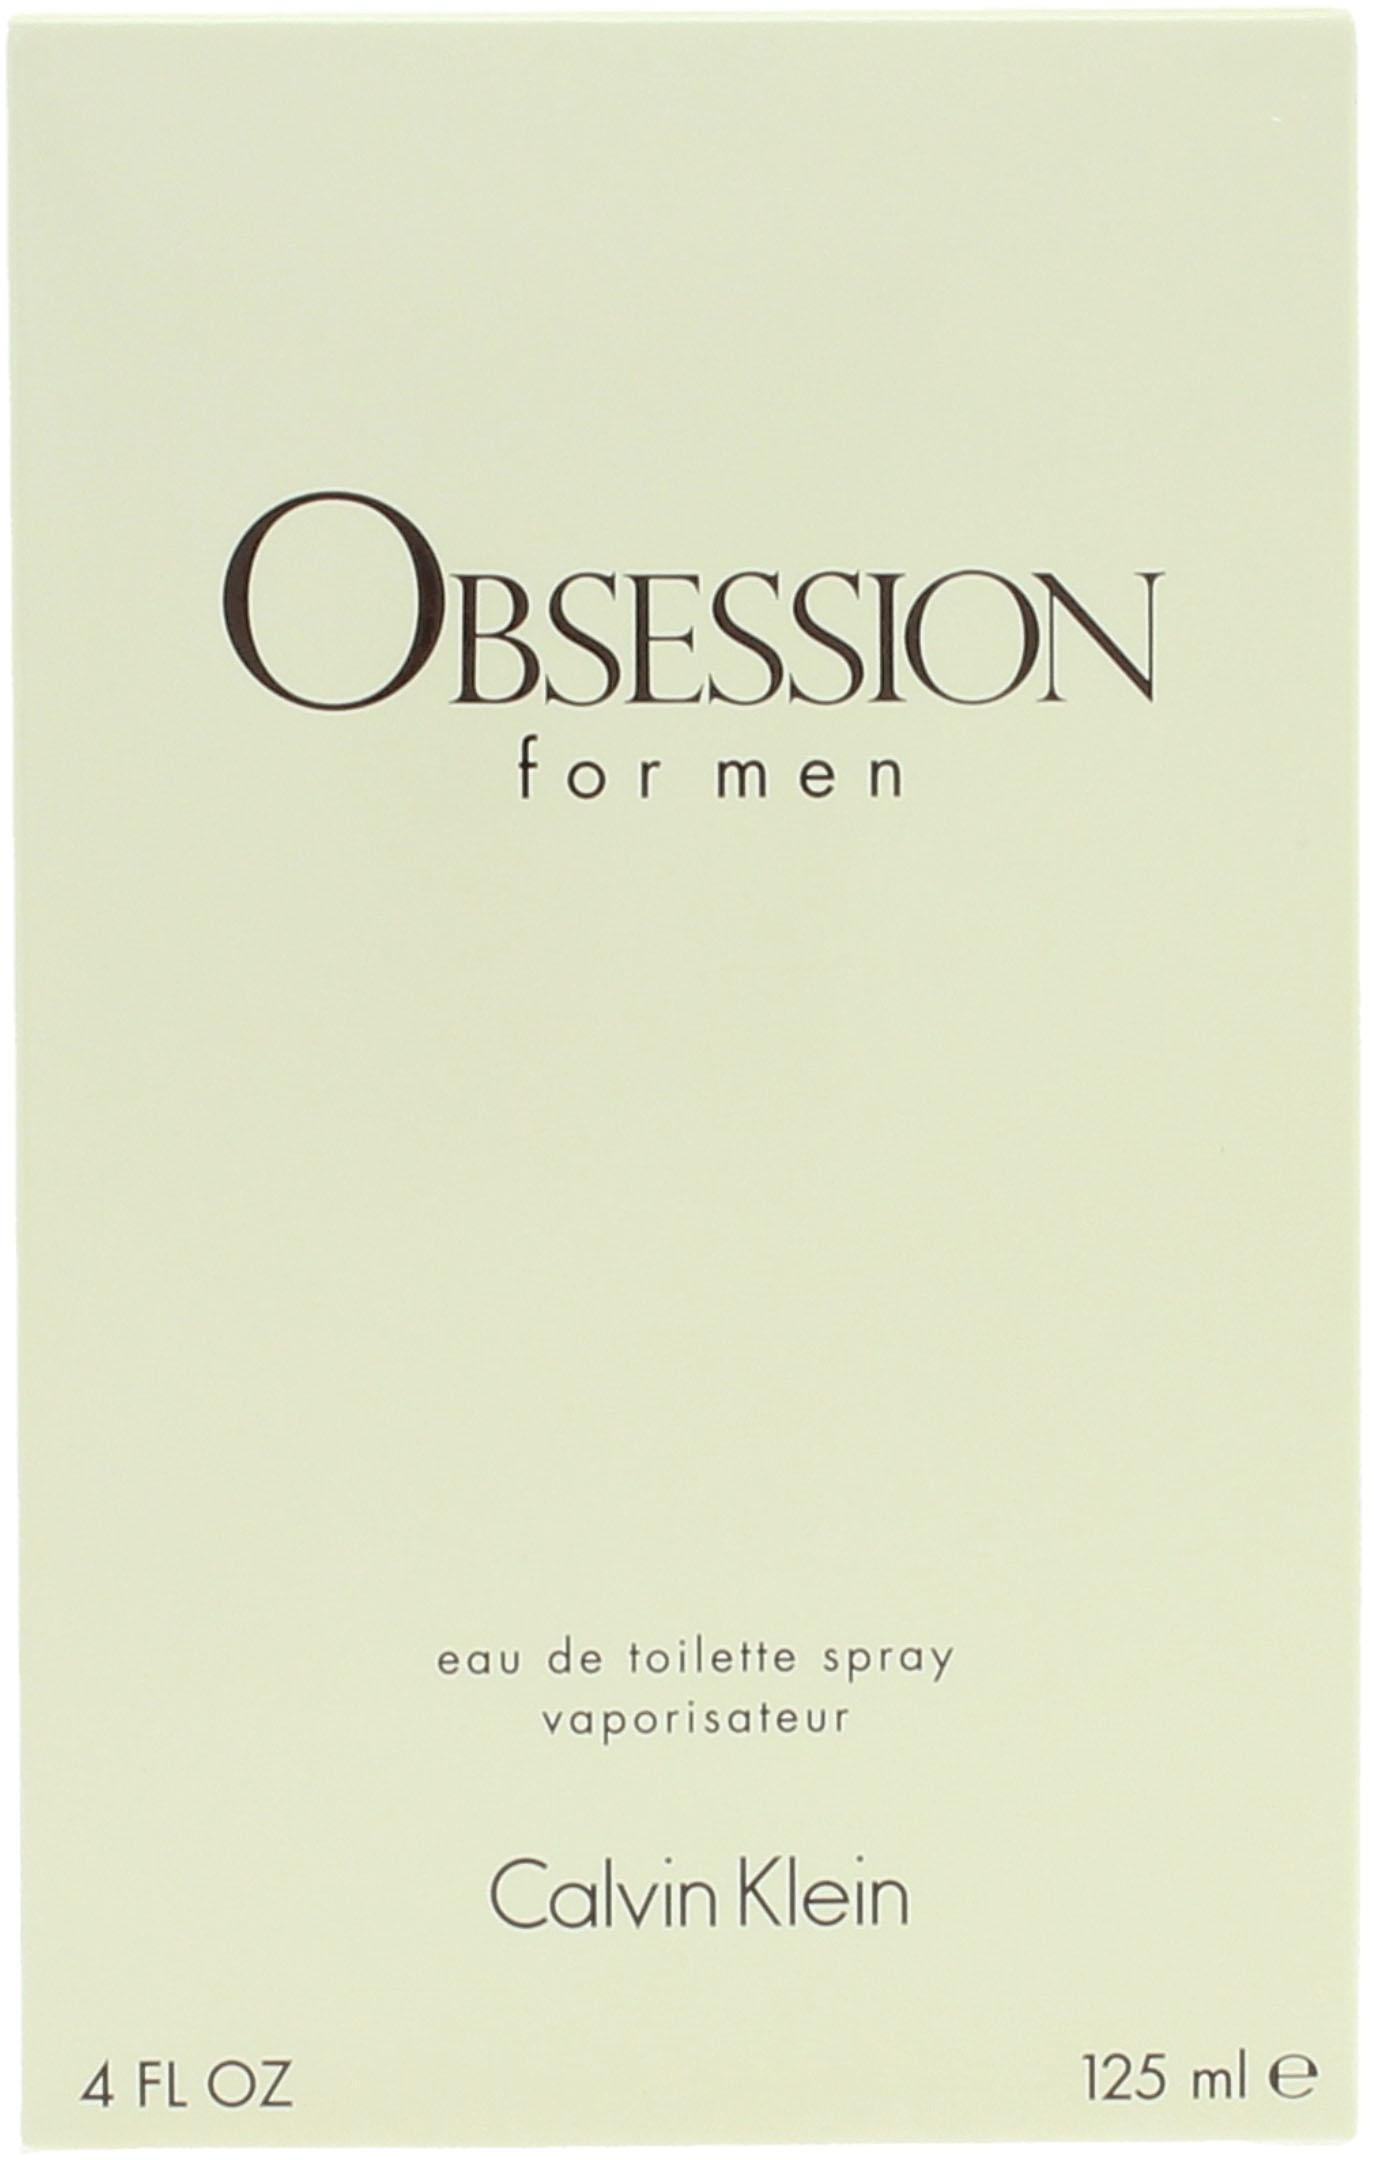 Calvin Klein Eau de Men« For Toilette »Obsession